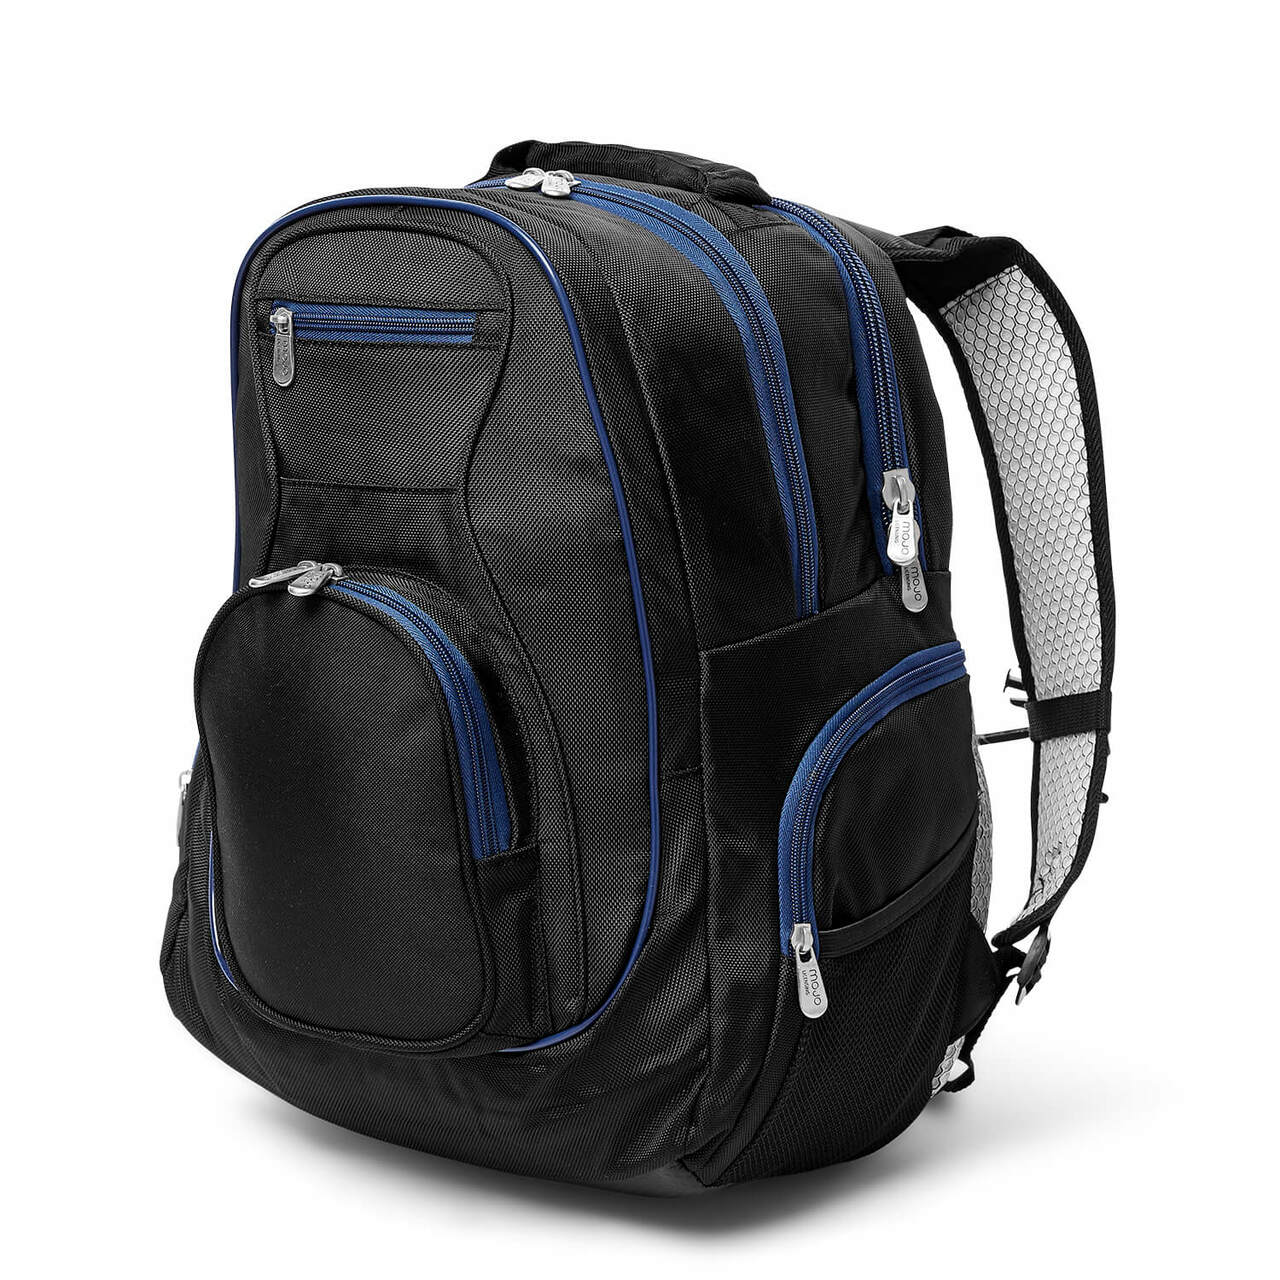 Broncos Backpack | Denver Broncos Laptop Backpack